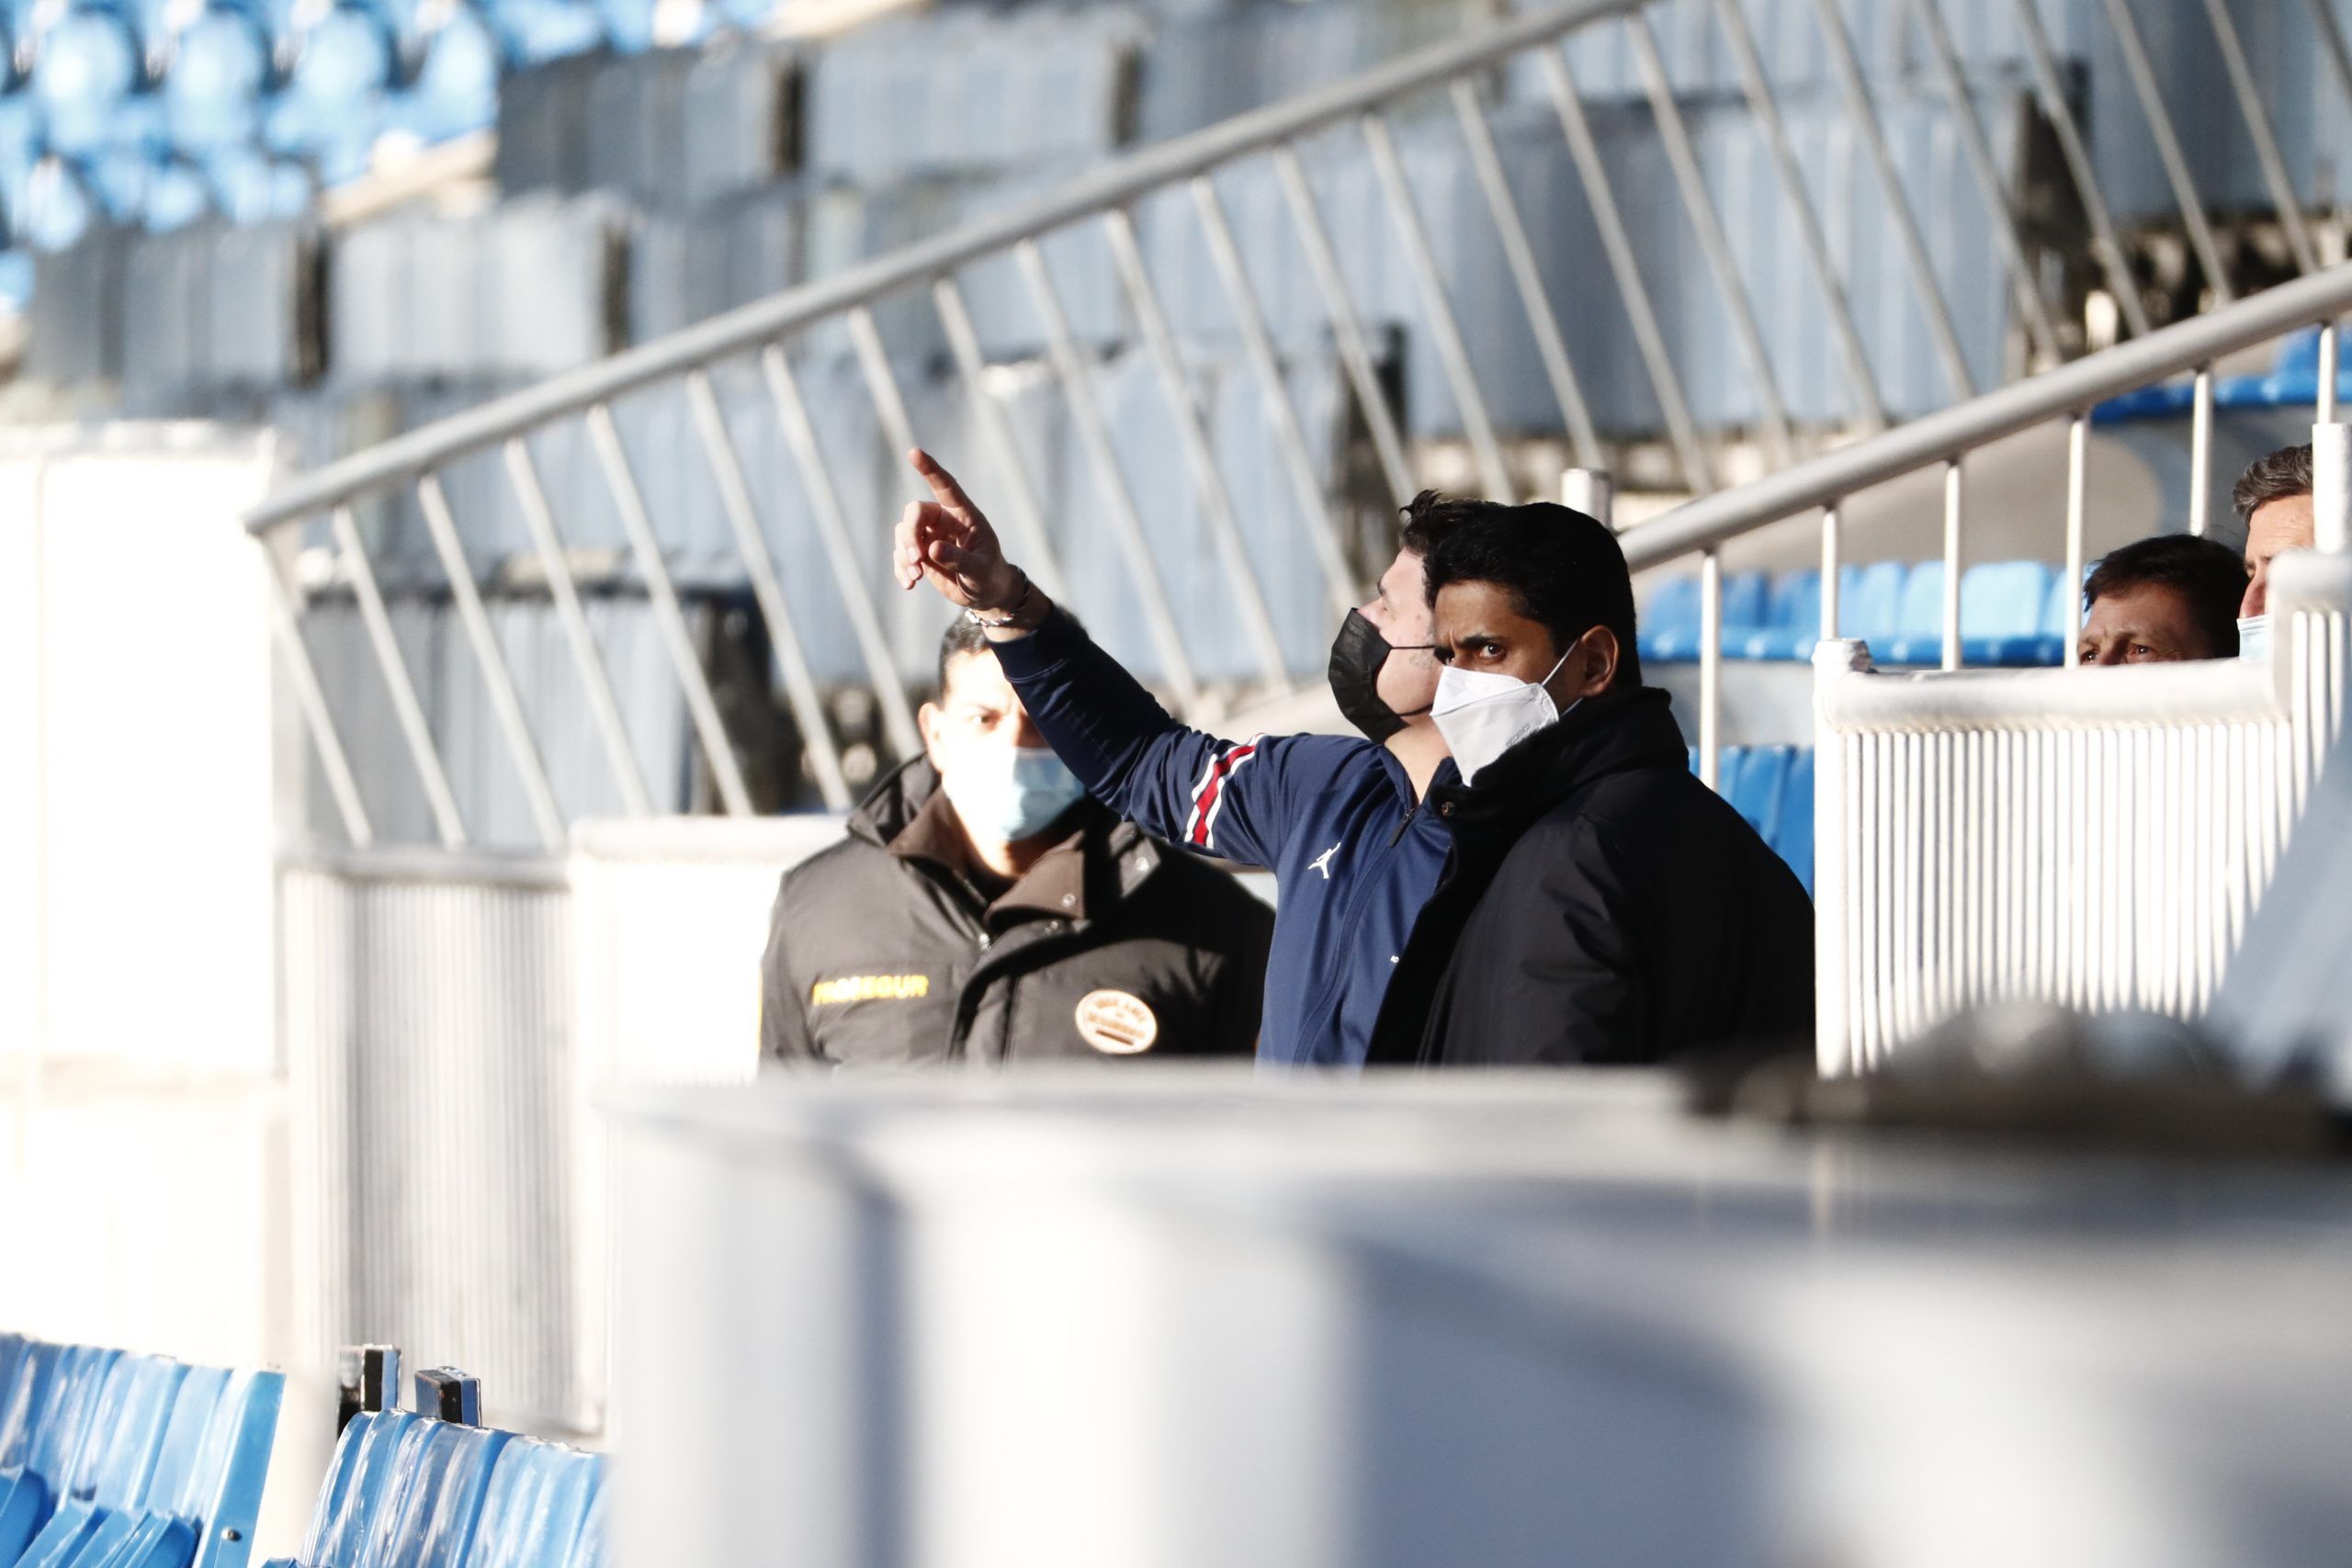 La UEFA ha abierto un expediente al presidente del PSG, Nasser Al-Khelaïfi, y a su director deportivo, el brasileño Leonardo Araújo, por los incidentes que protagonizaron el miércoles en los vestuarios del Santiago Bernabeu